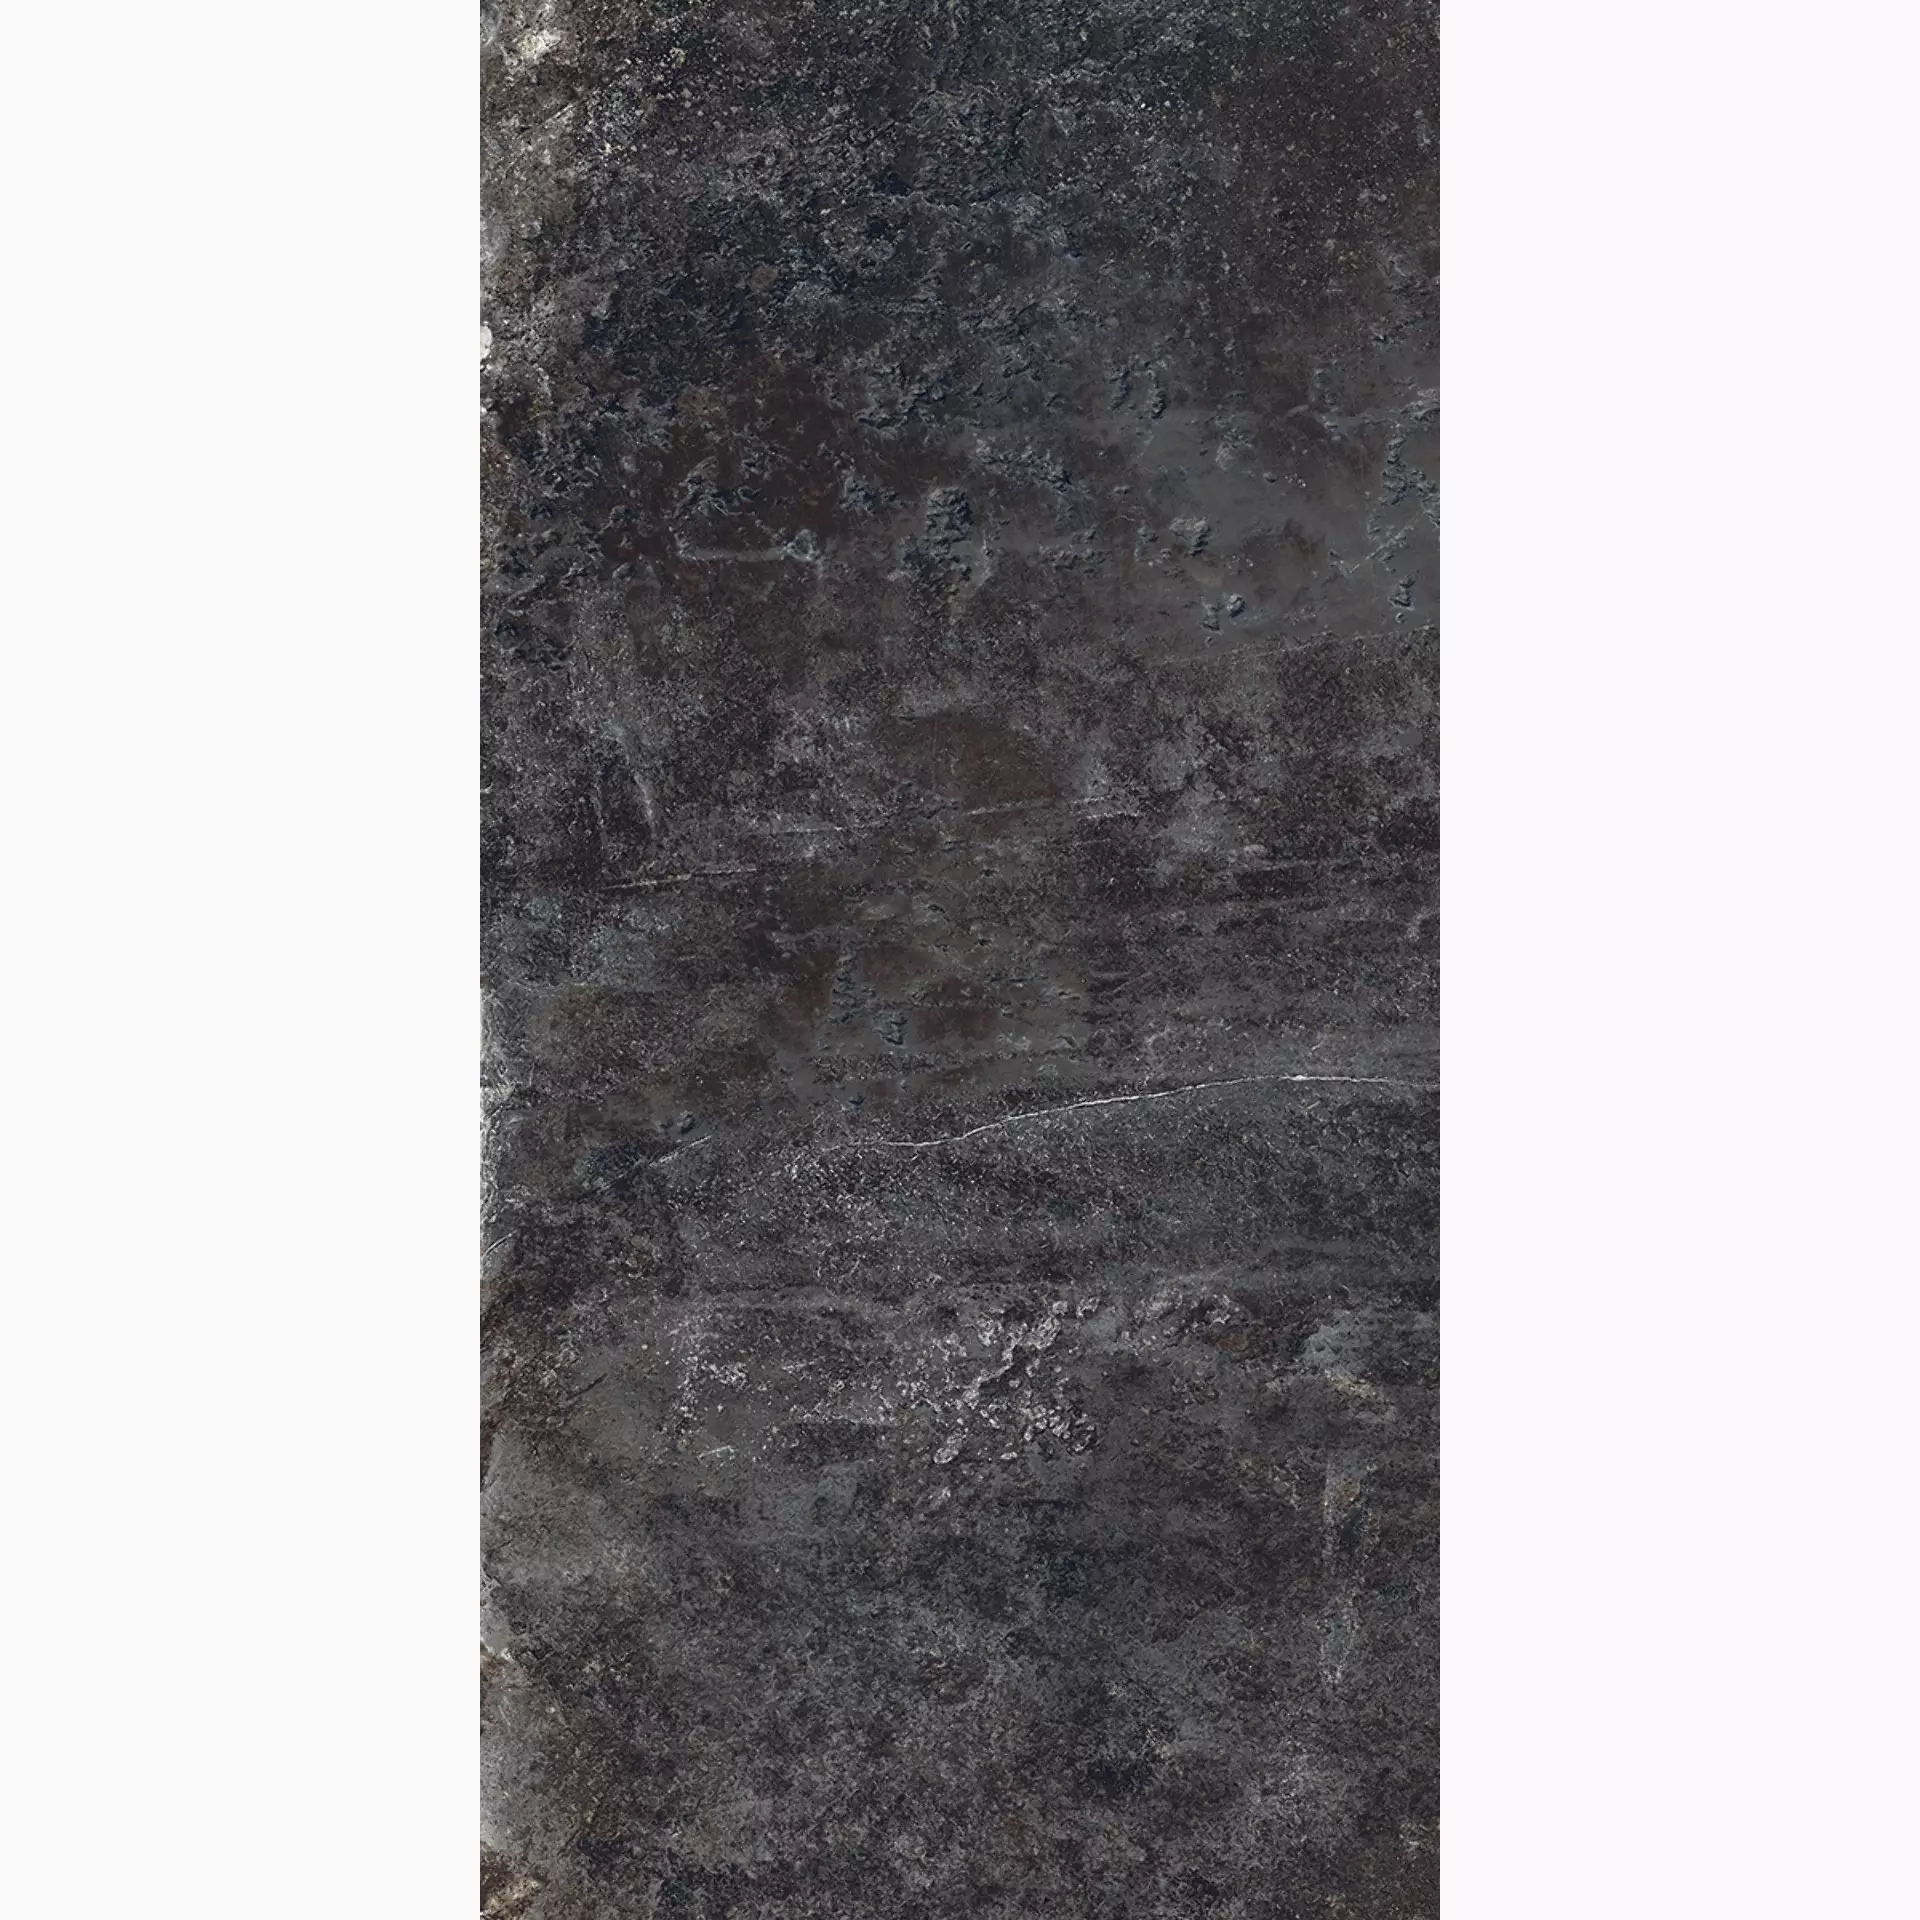 Rondine Ardesie Dark Naturale J87001 30x60cm rektifiziert 8,5mm